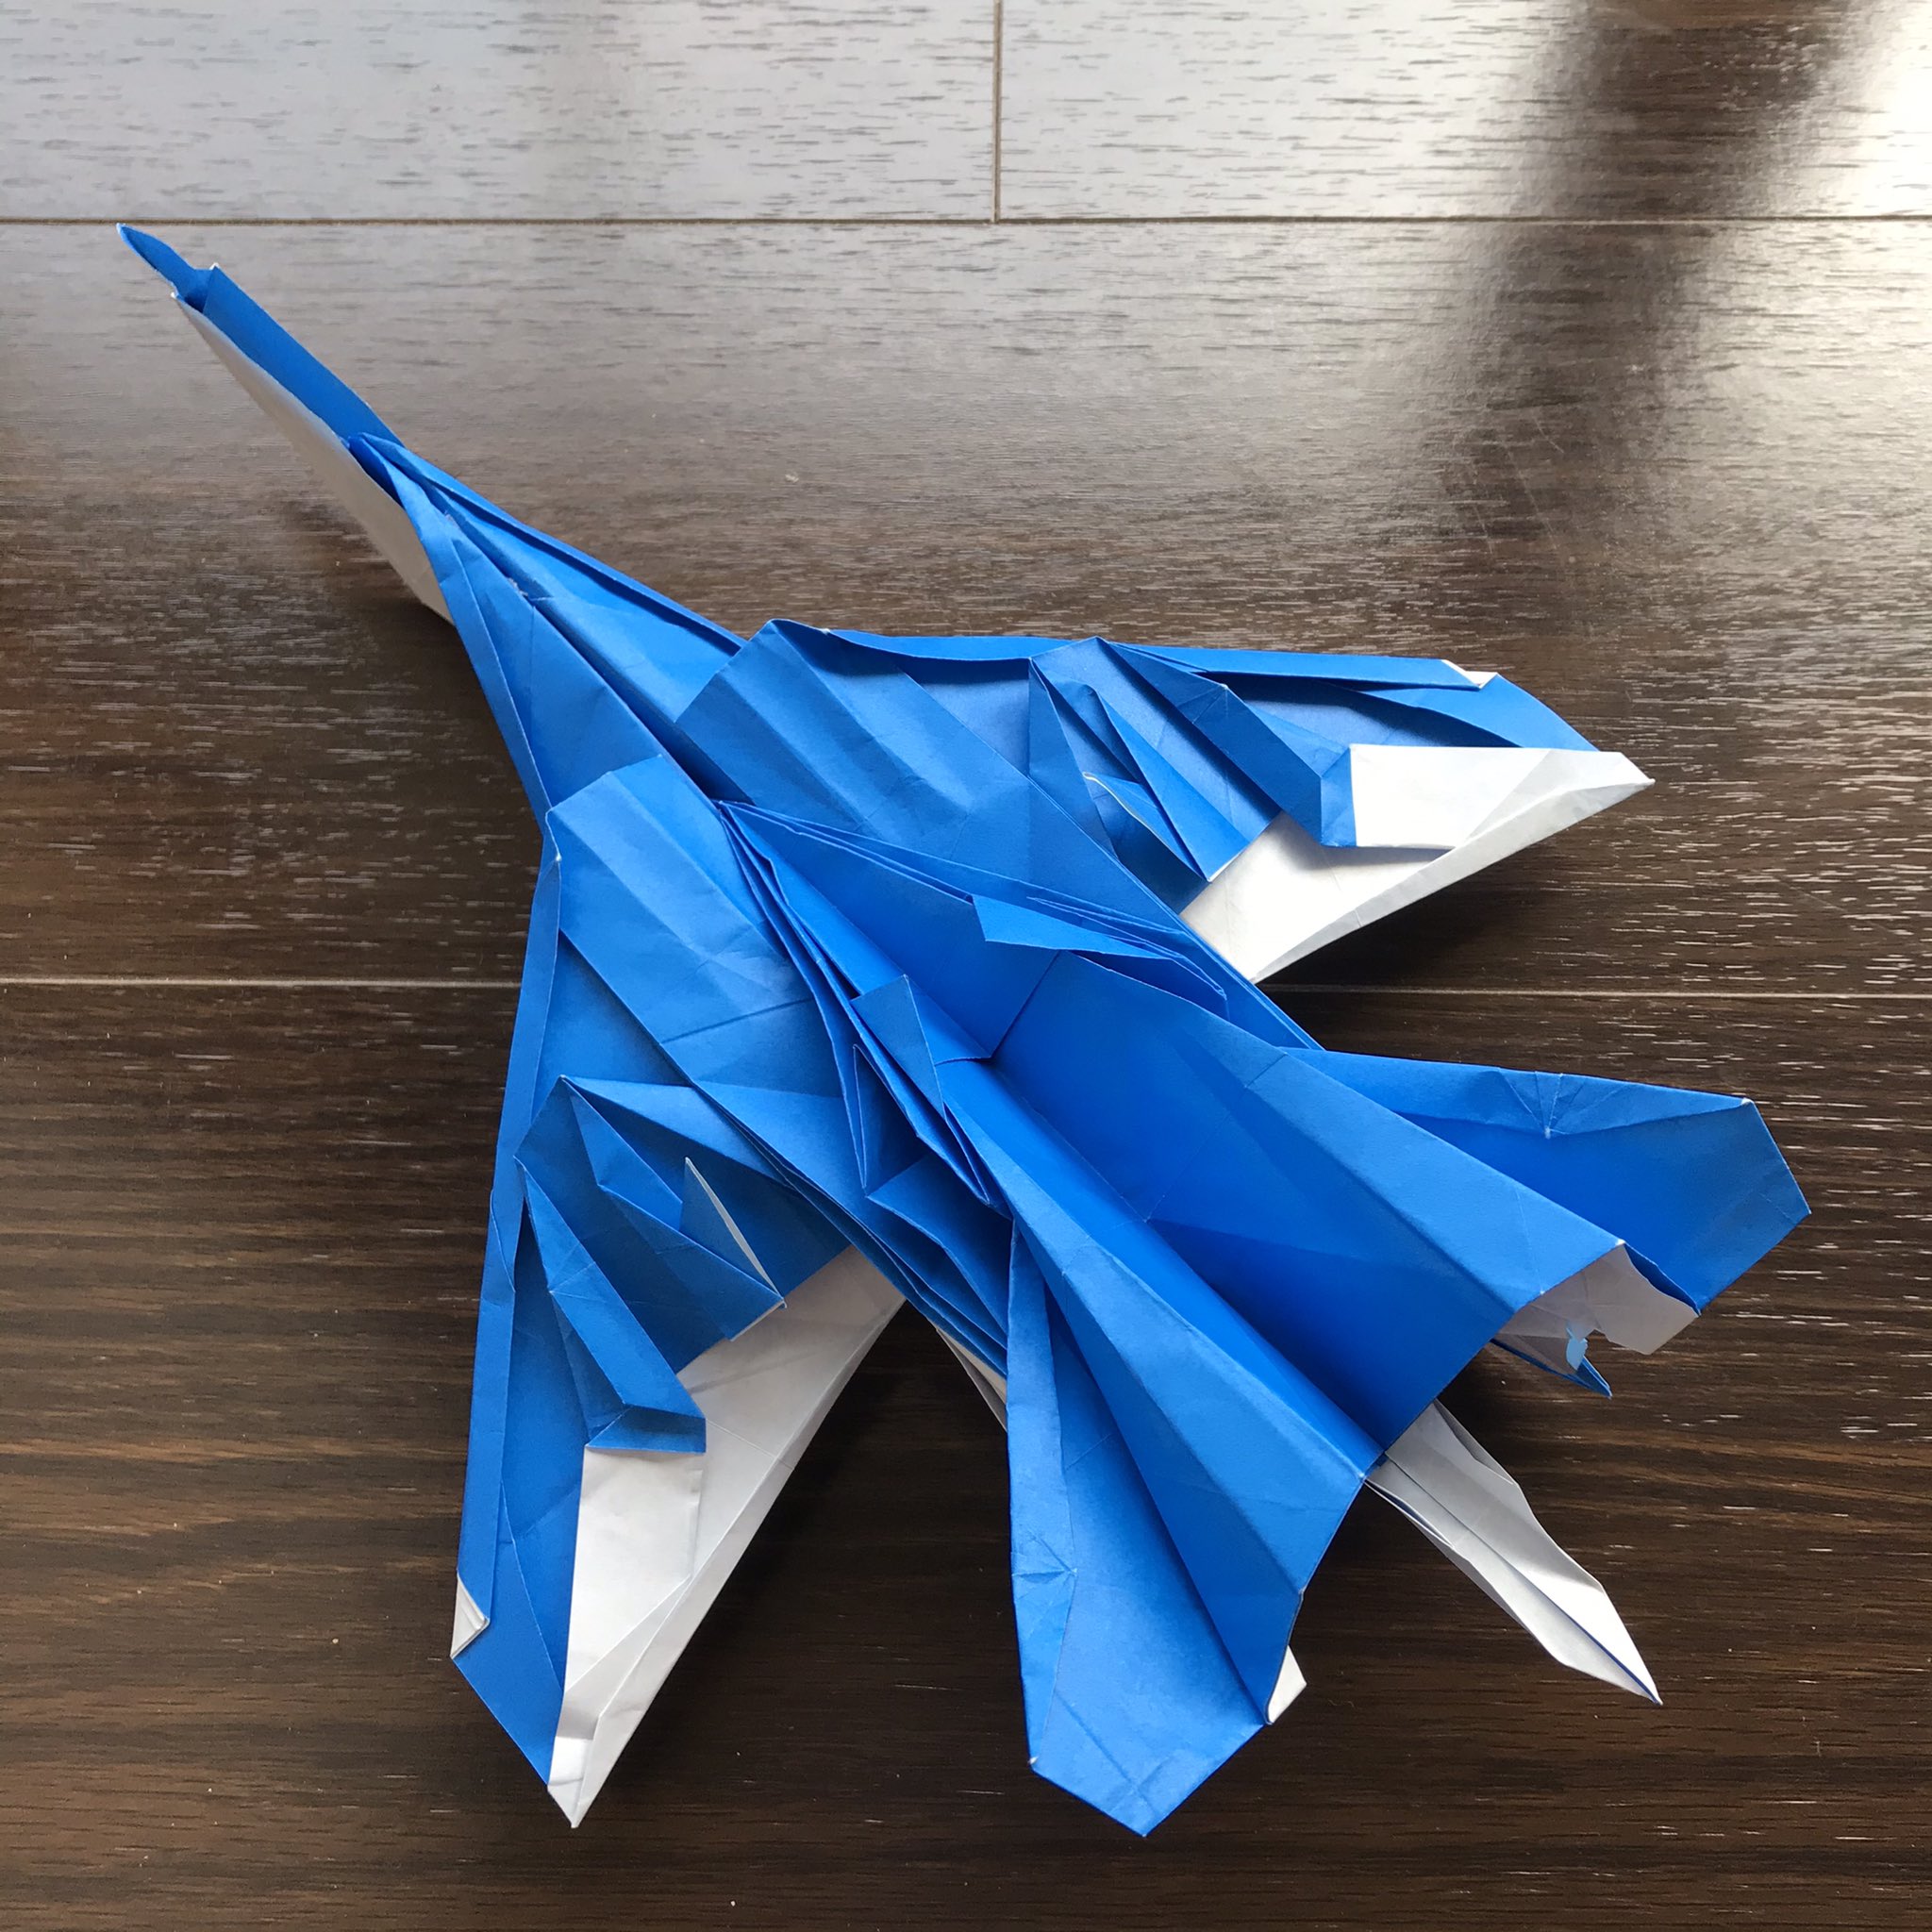 Sachiko なんともメカメカしい紙飛行機ですわね 飛ばなかった 南島和英 Su 27フランカー 究極のおりがみ T Co Jssuaby6fn Twitter